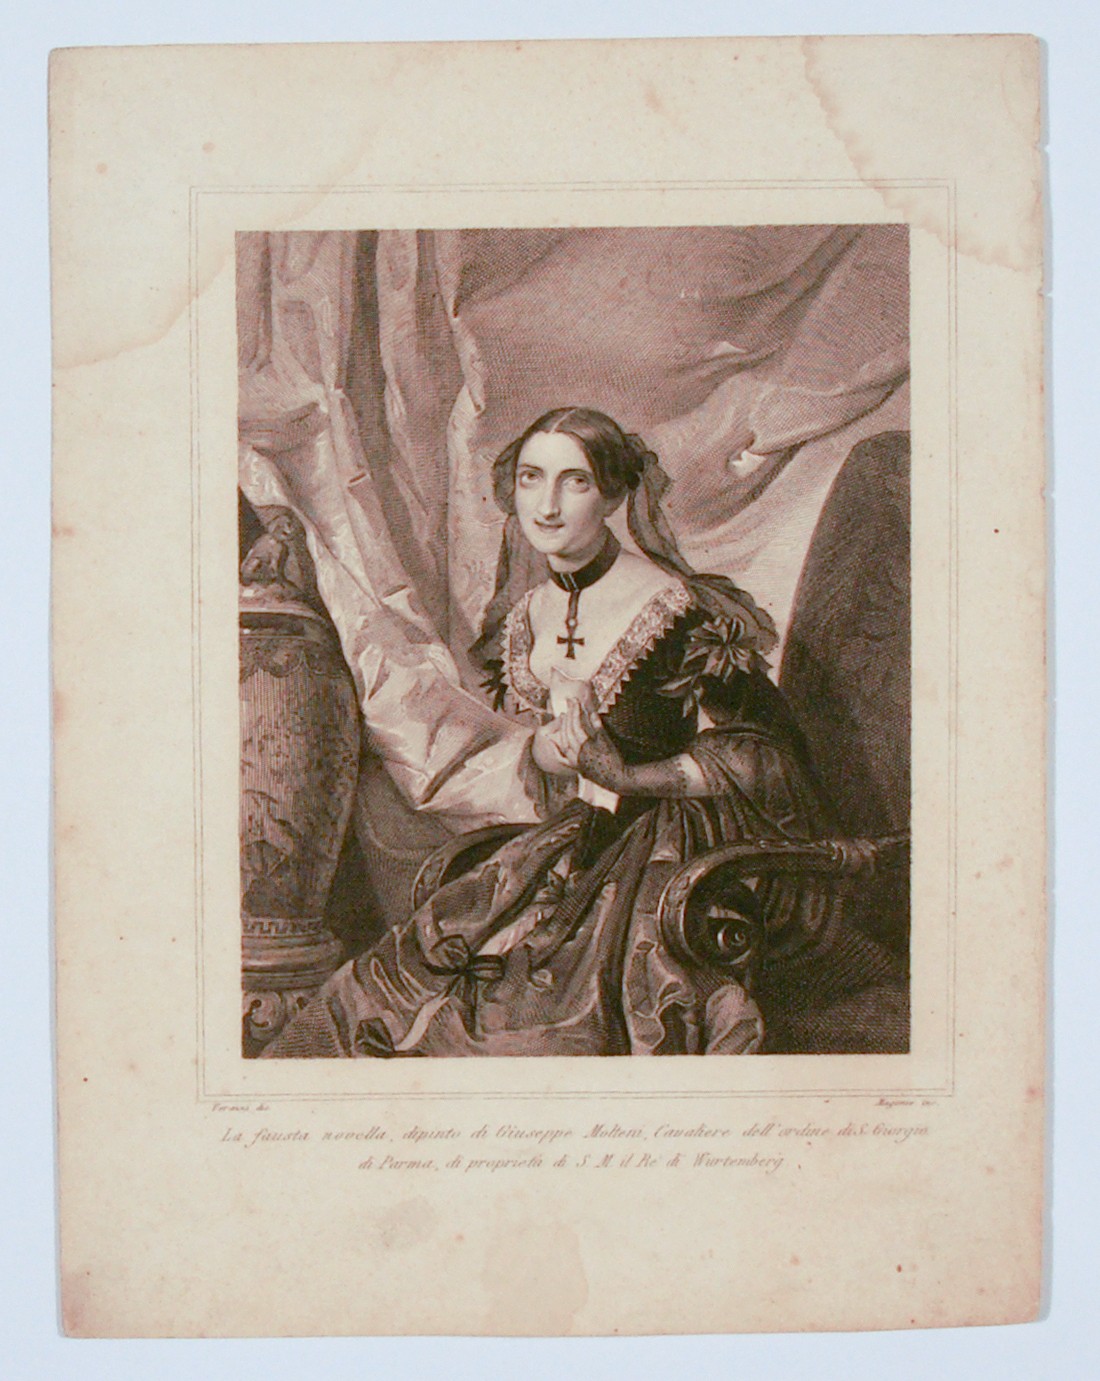 La fausta novella, figura femminile seduta (stampa) di Molteni Giuseppe, Verrazzi, Magonni Giuseppe (inizio sec. XIX)